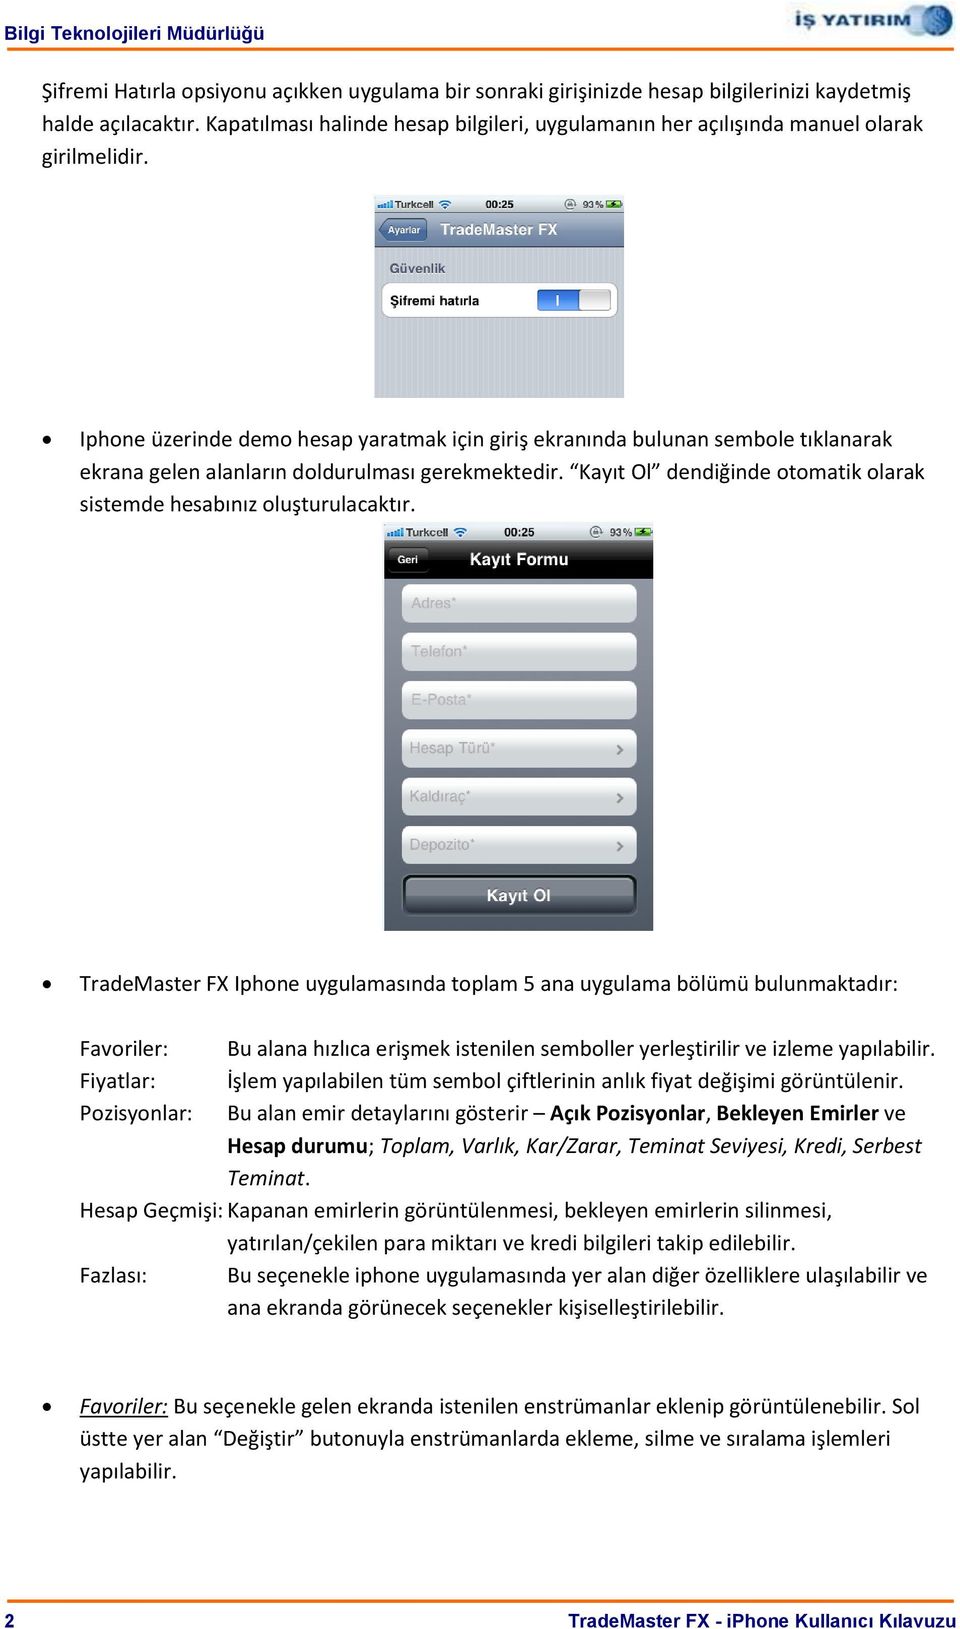 Iphone üzerinde demo hesap yaratmak için giriş ekranında bulunan sembole tıklanarak ekrana gelen alanların doldurulması gerekmektedir.